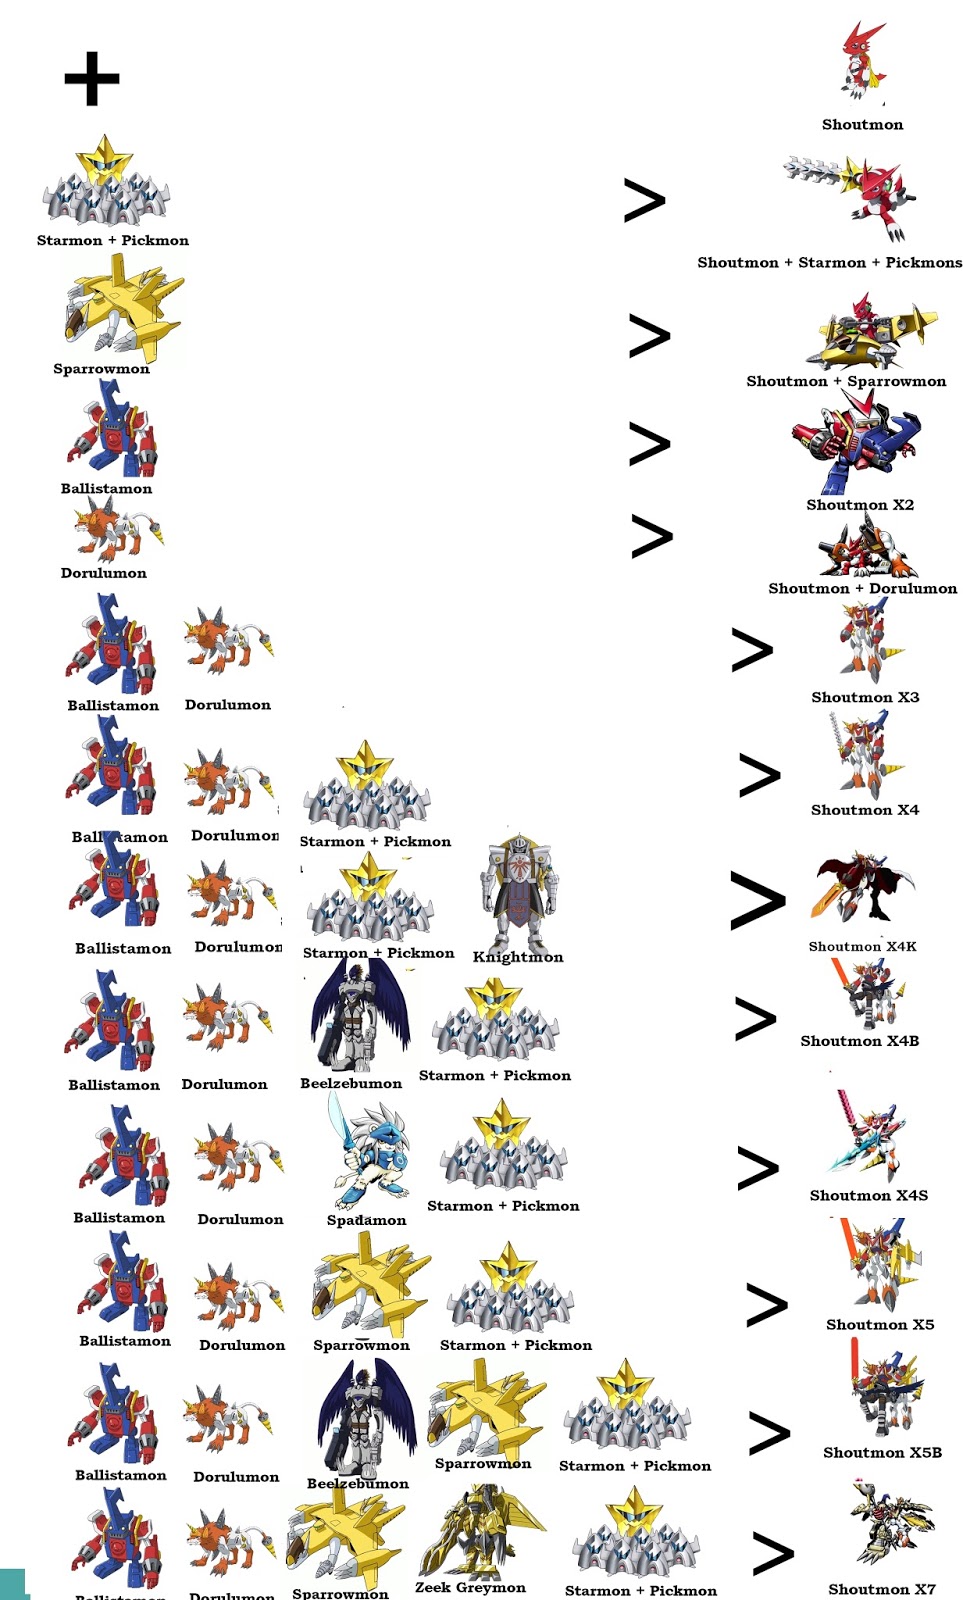 Por que os Digimons tem mais de uma linha evolutiva?